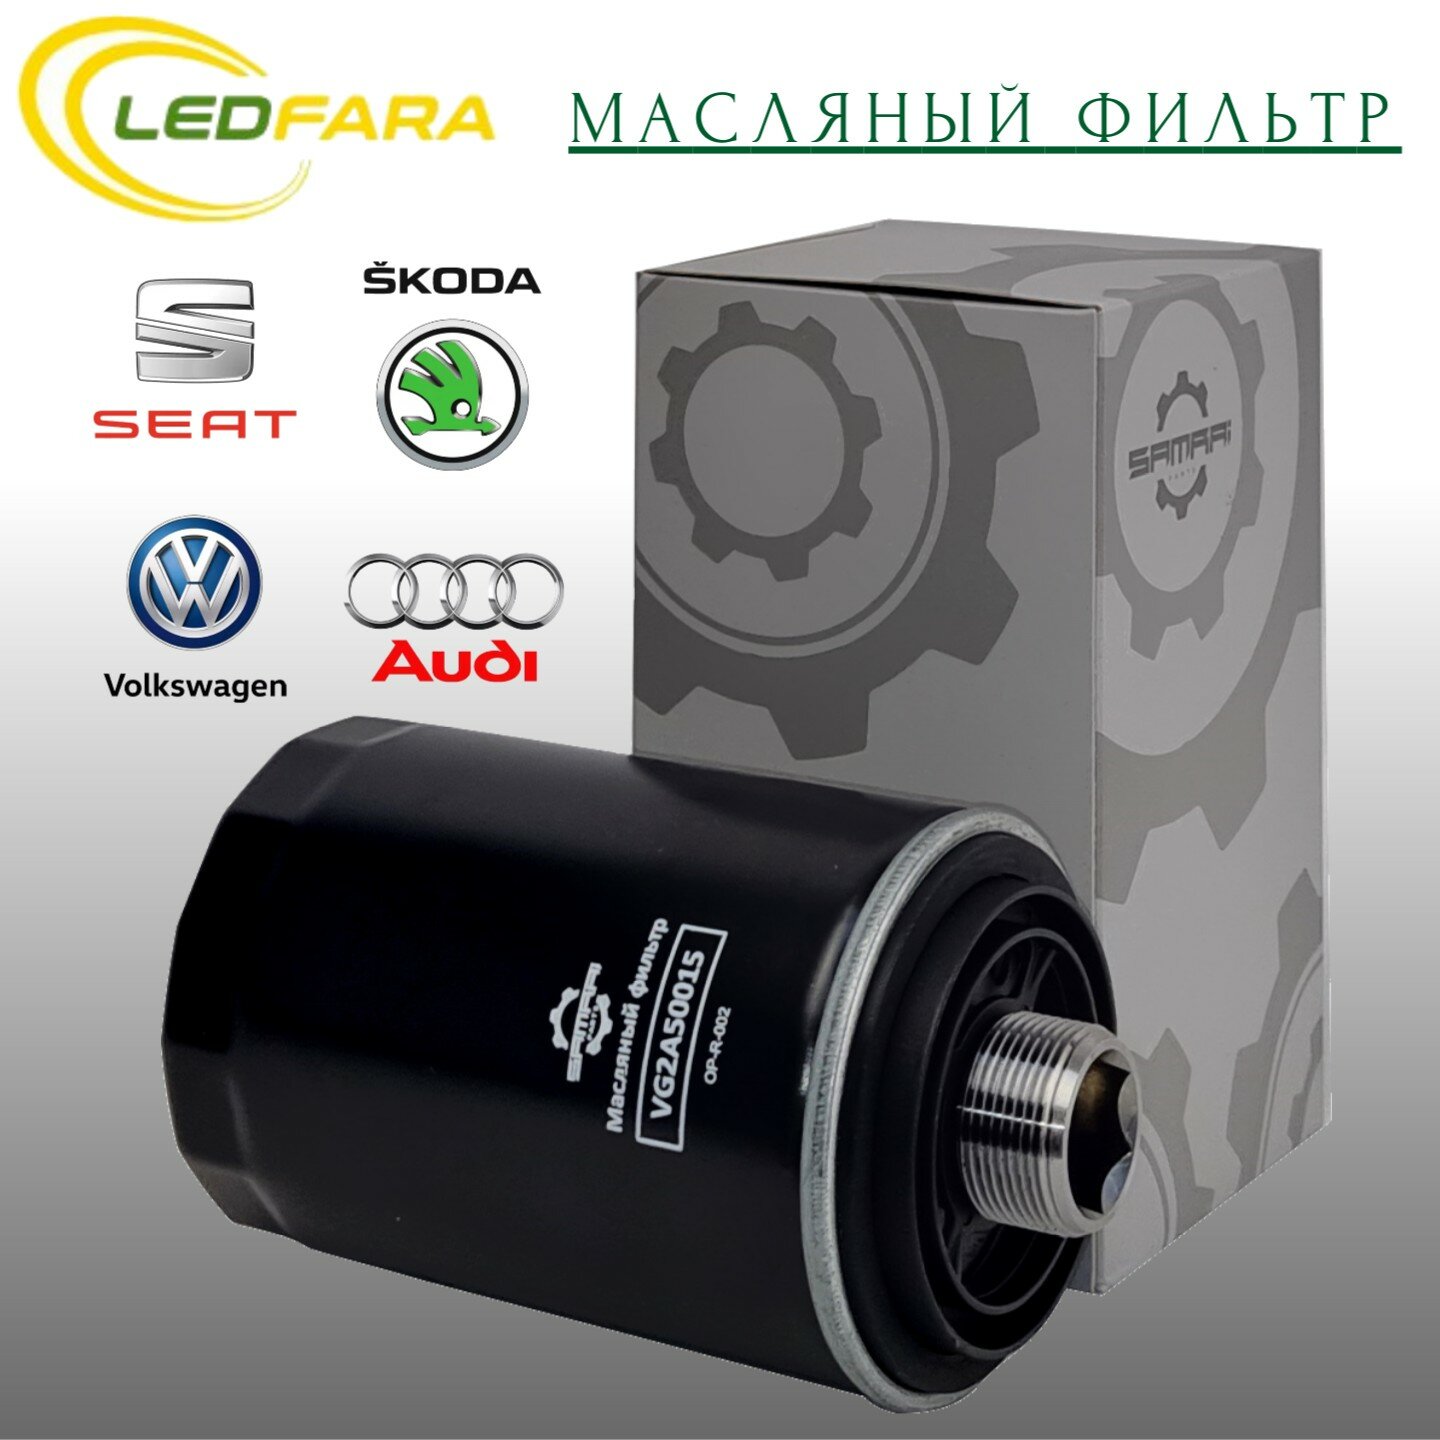 Масляный фильтр Smrai Parts для Audi, Volkswagen, Skoda VG2A50015, 06J 115 403 Q, W 719/45, 51005A2